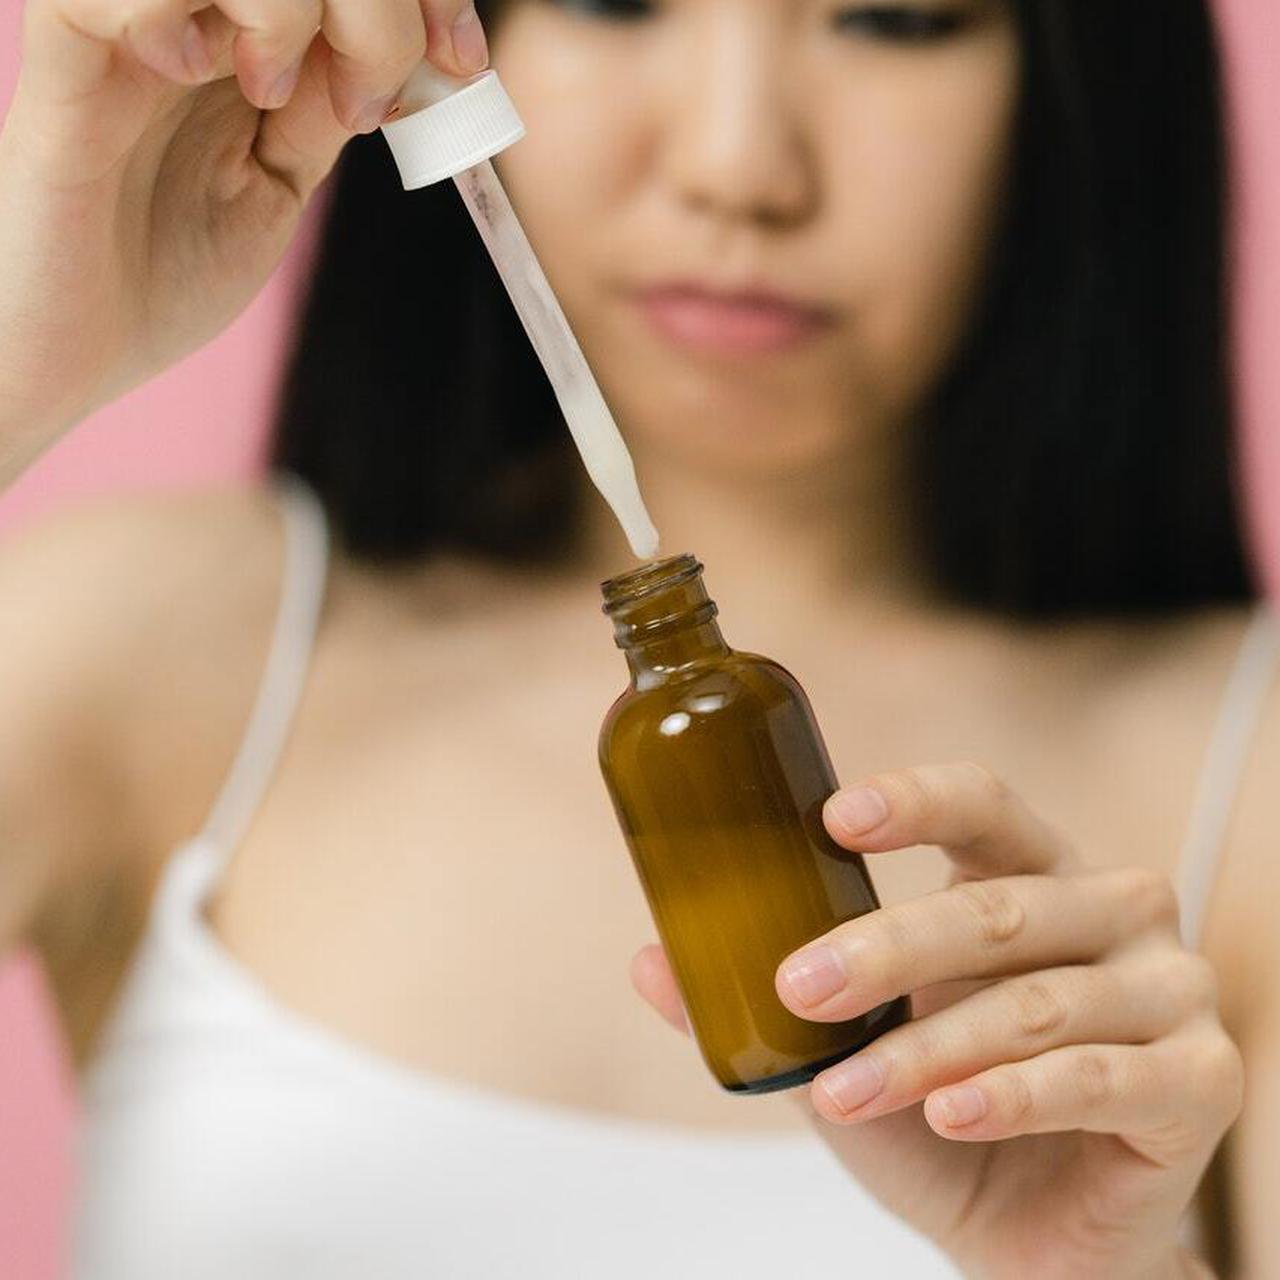 Девушка использует сперму вместо крема. Ее лицо сияет | WMJ.ru